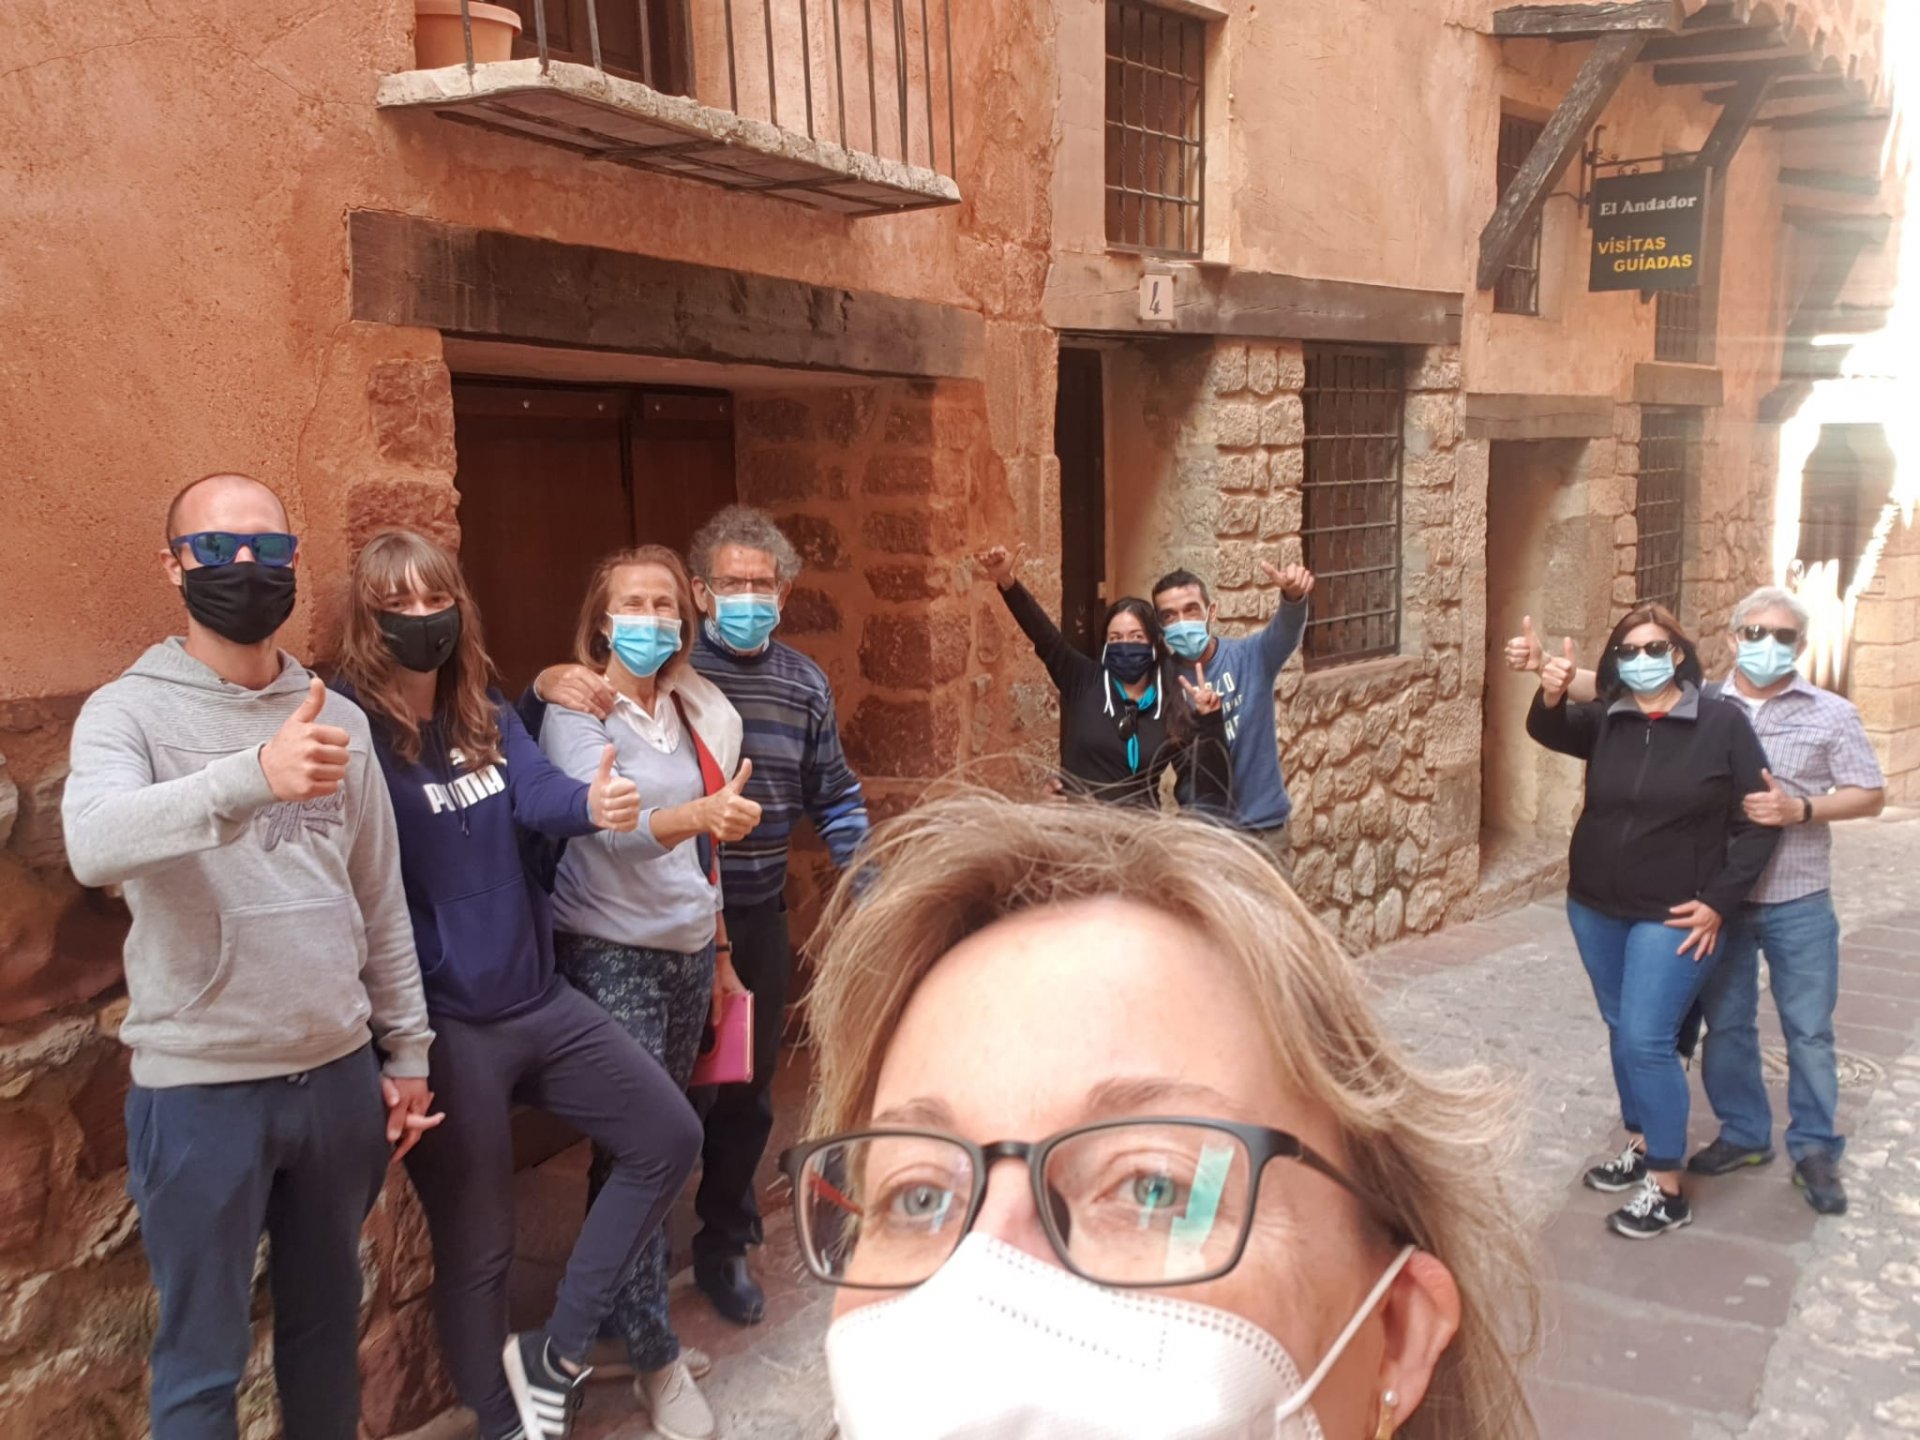 #VisitaGuiada en #Albarracín del Sábado con nuestros nuevos amig@s: GRACIAS POR SU CONFIANZA!!!